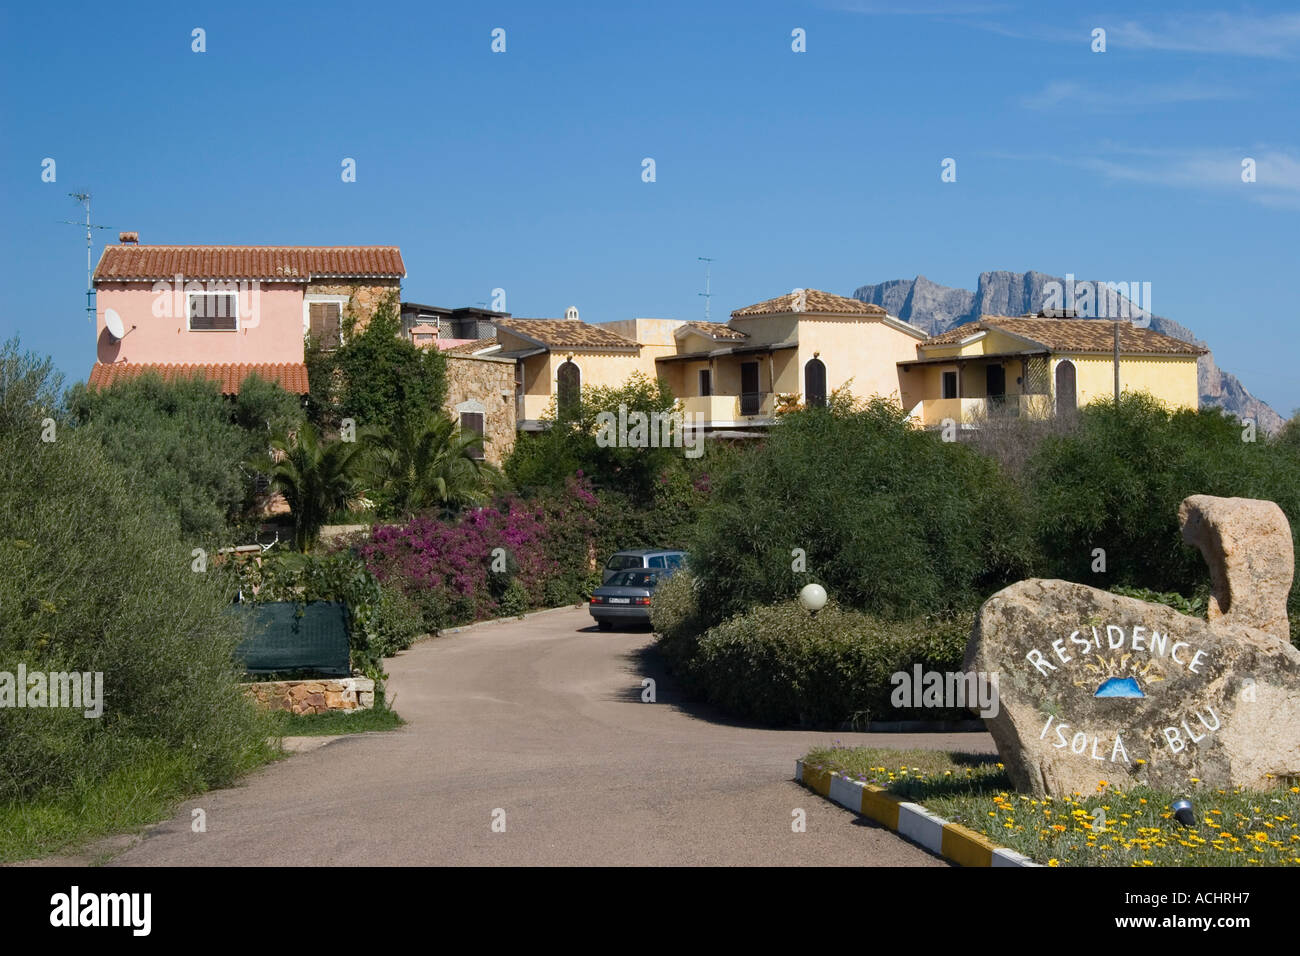 Maison de vacances bungalows, Isola Blu, Porto San Paolo, eastcoast, Sardaigne, Italie Banque D'Images